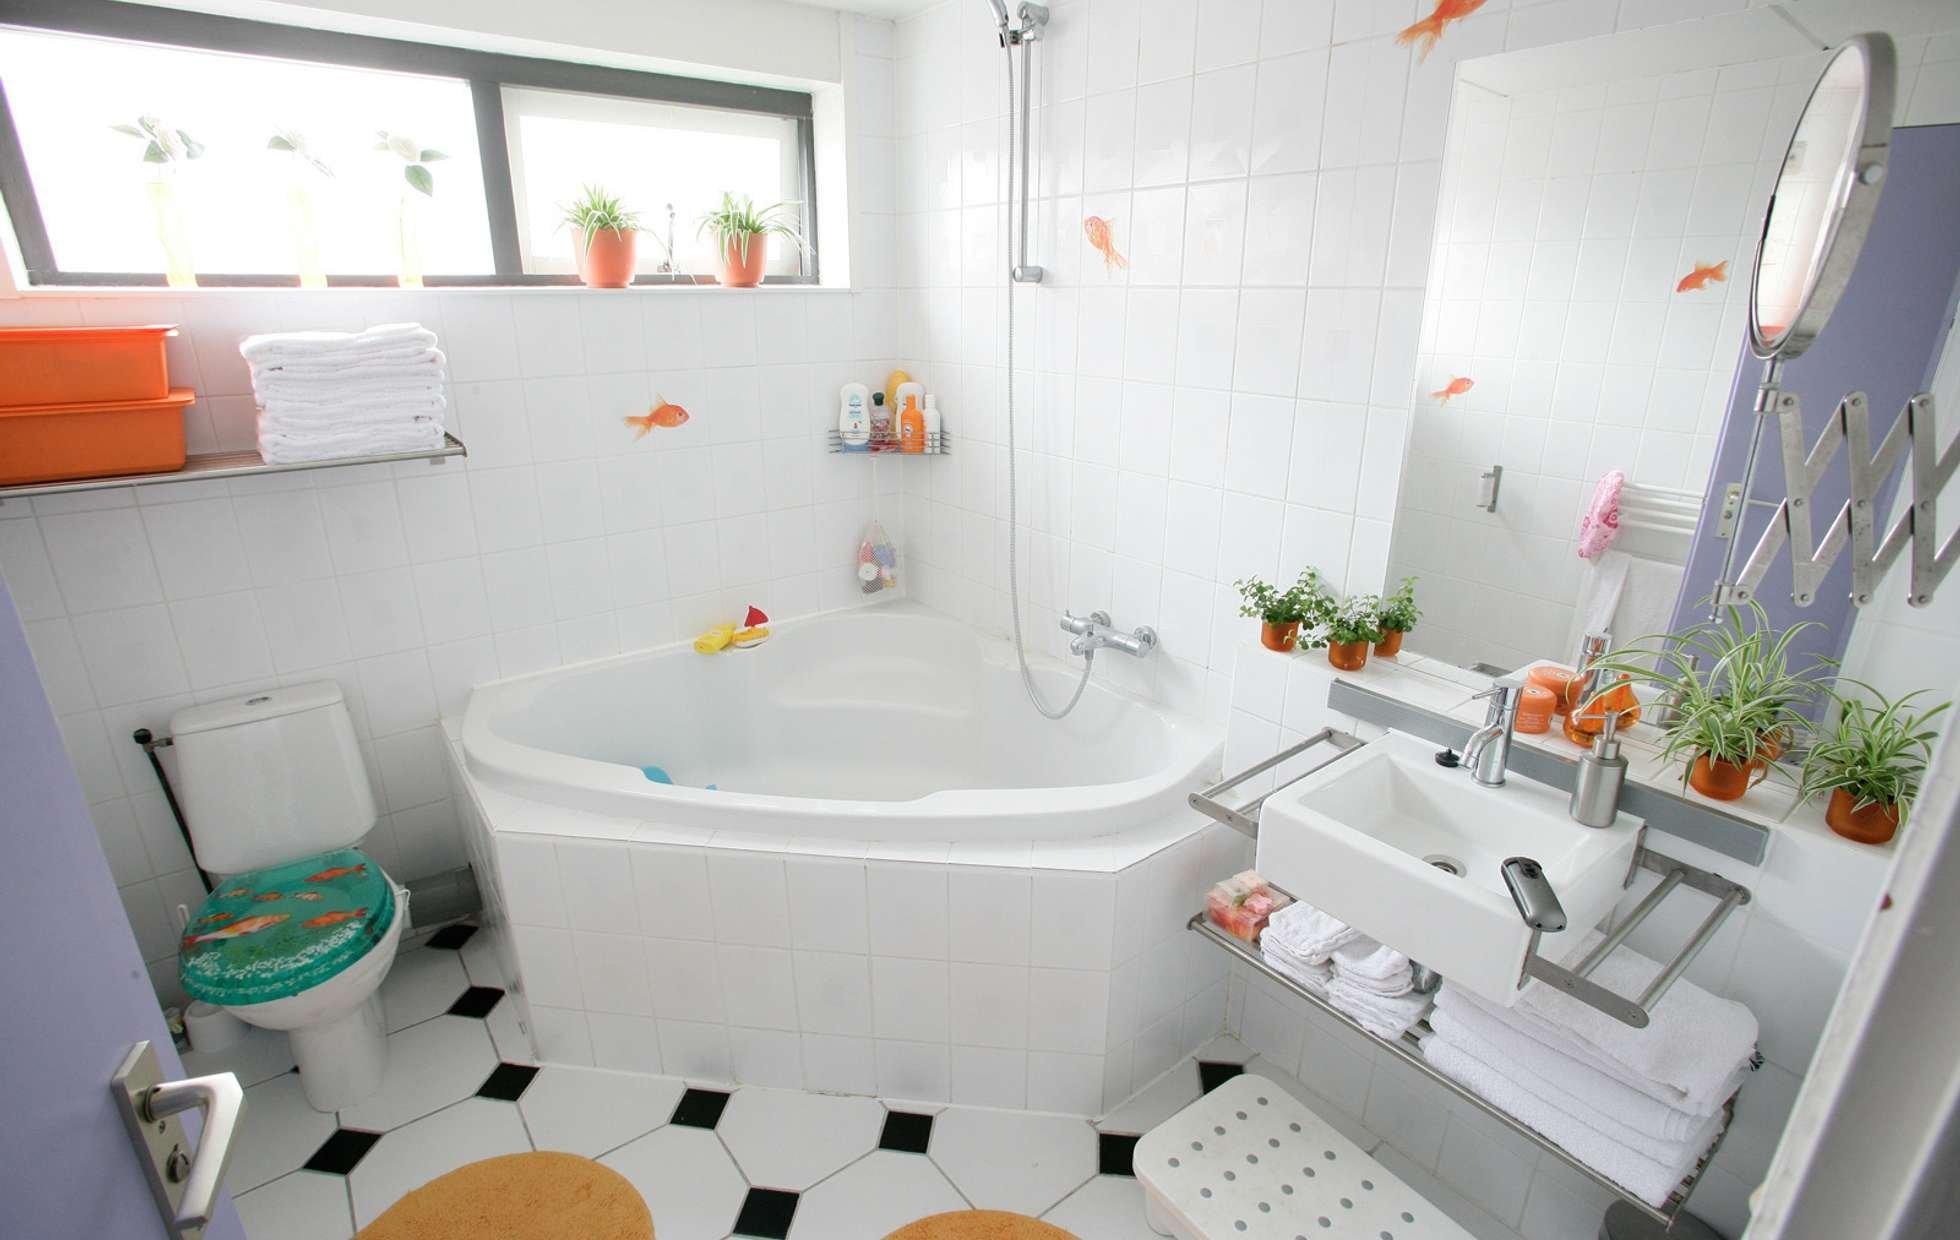 Шикарный дизайна ванной комнаты с контрастными оттенками